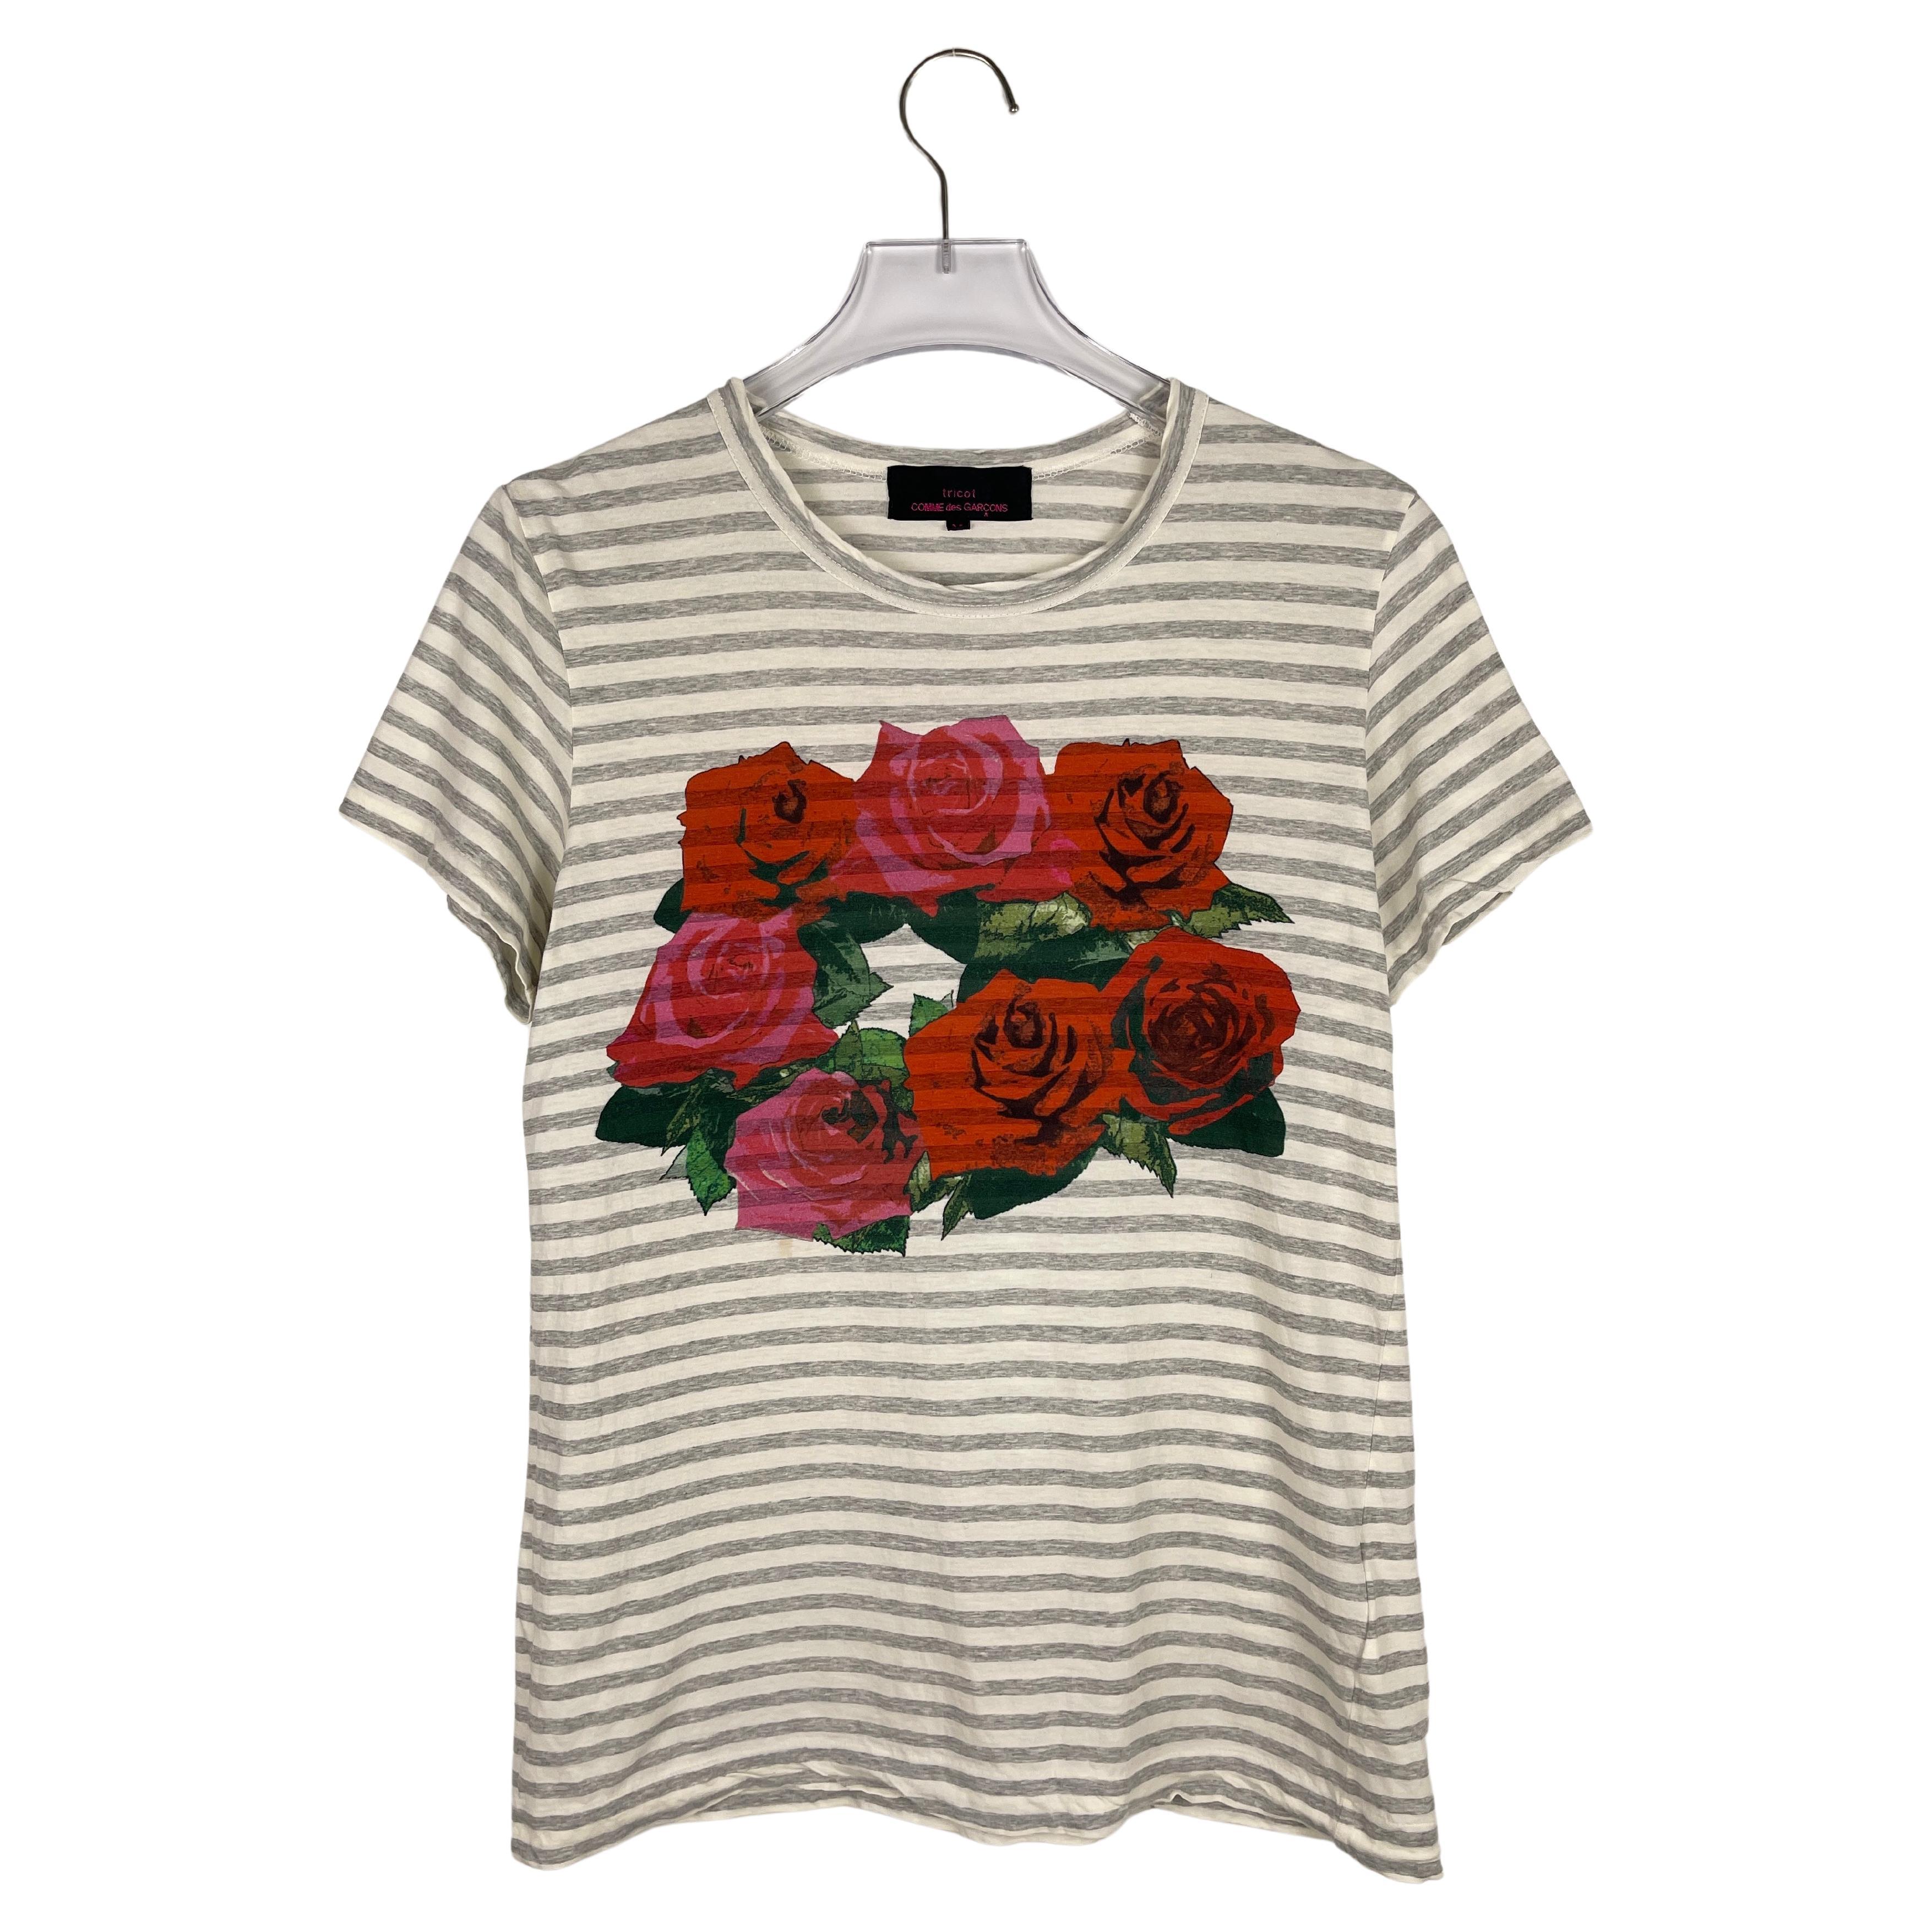 tricot Comme des Garcons S/S2012 Floral Striped T-Shirt For Sale